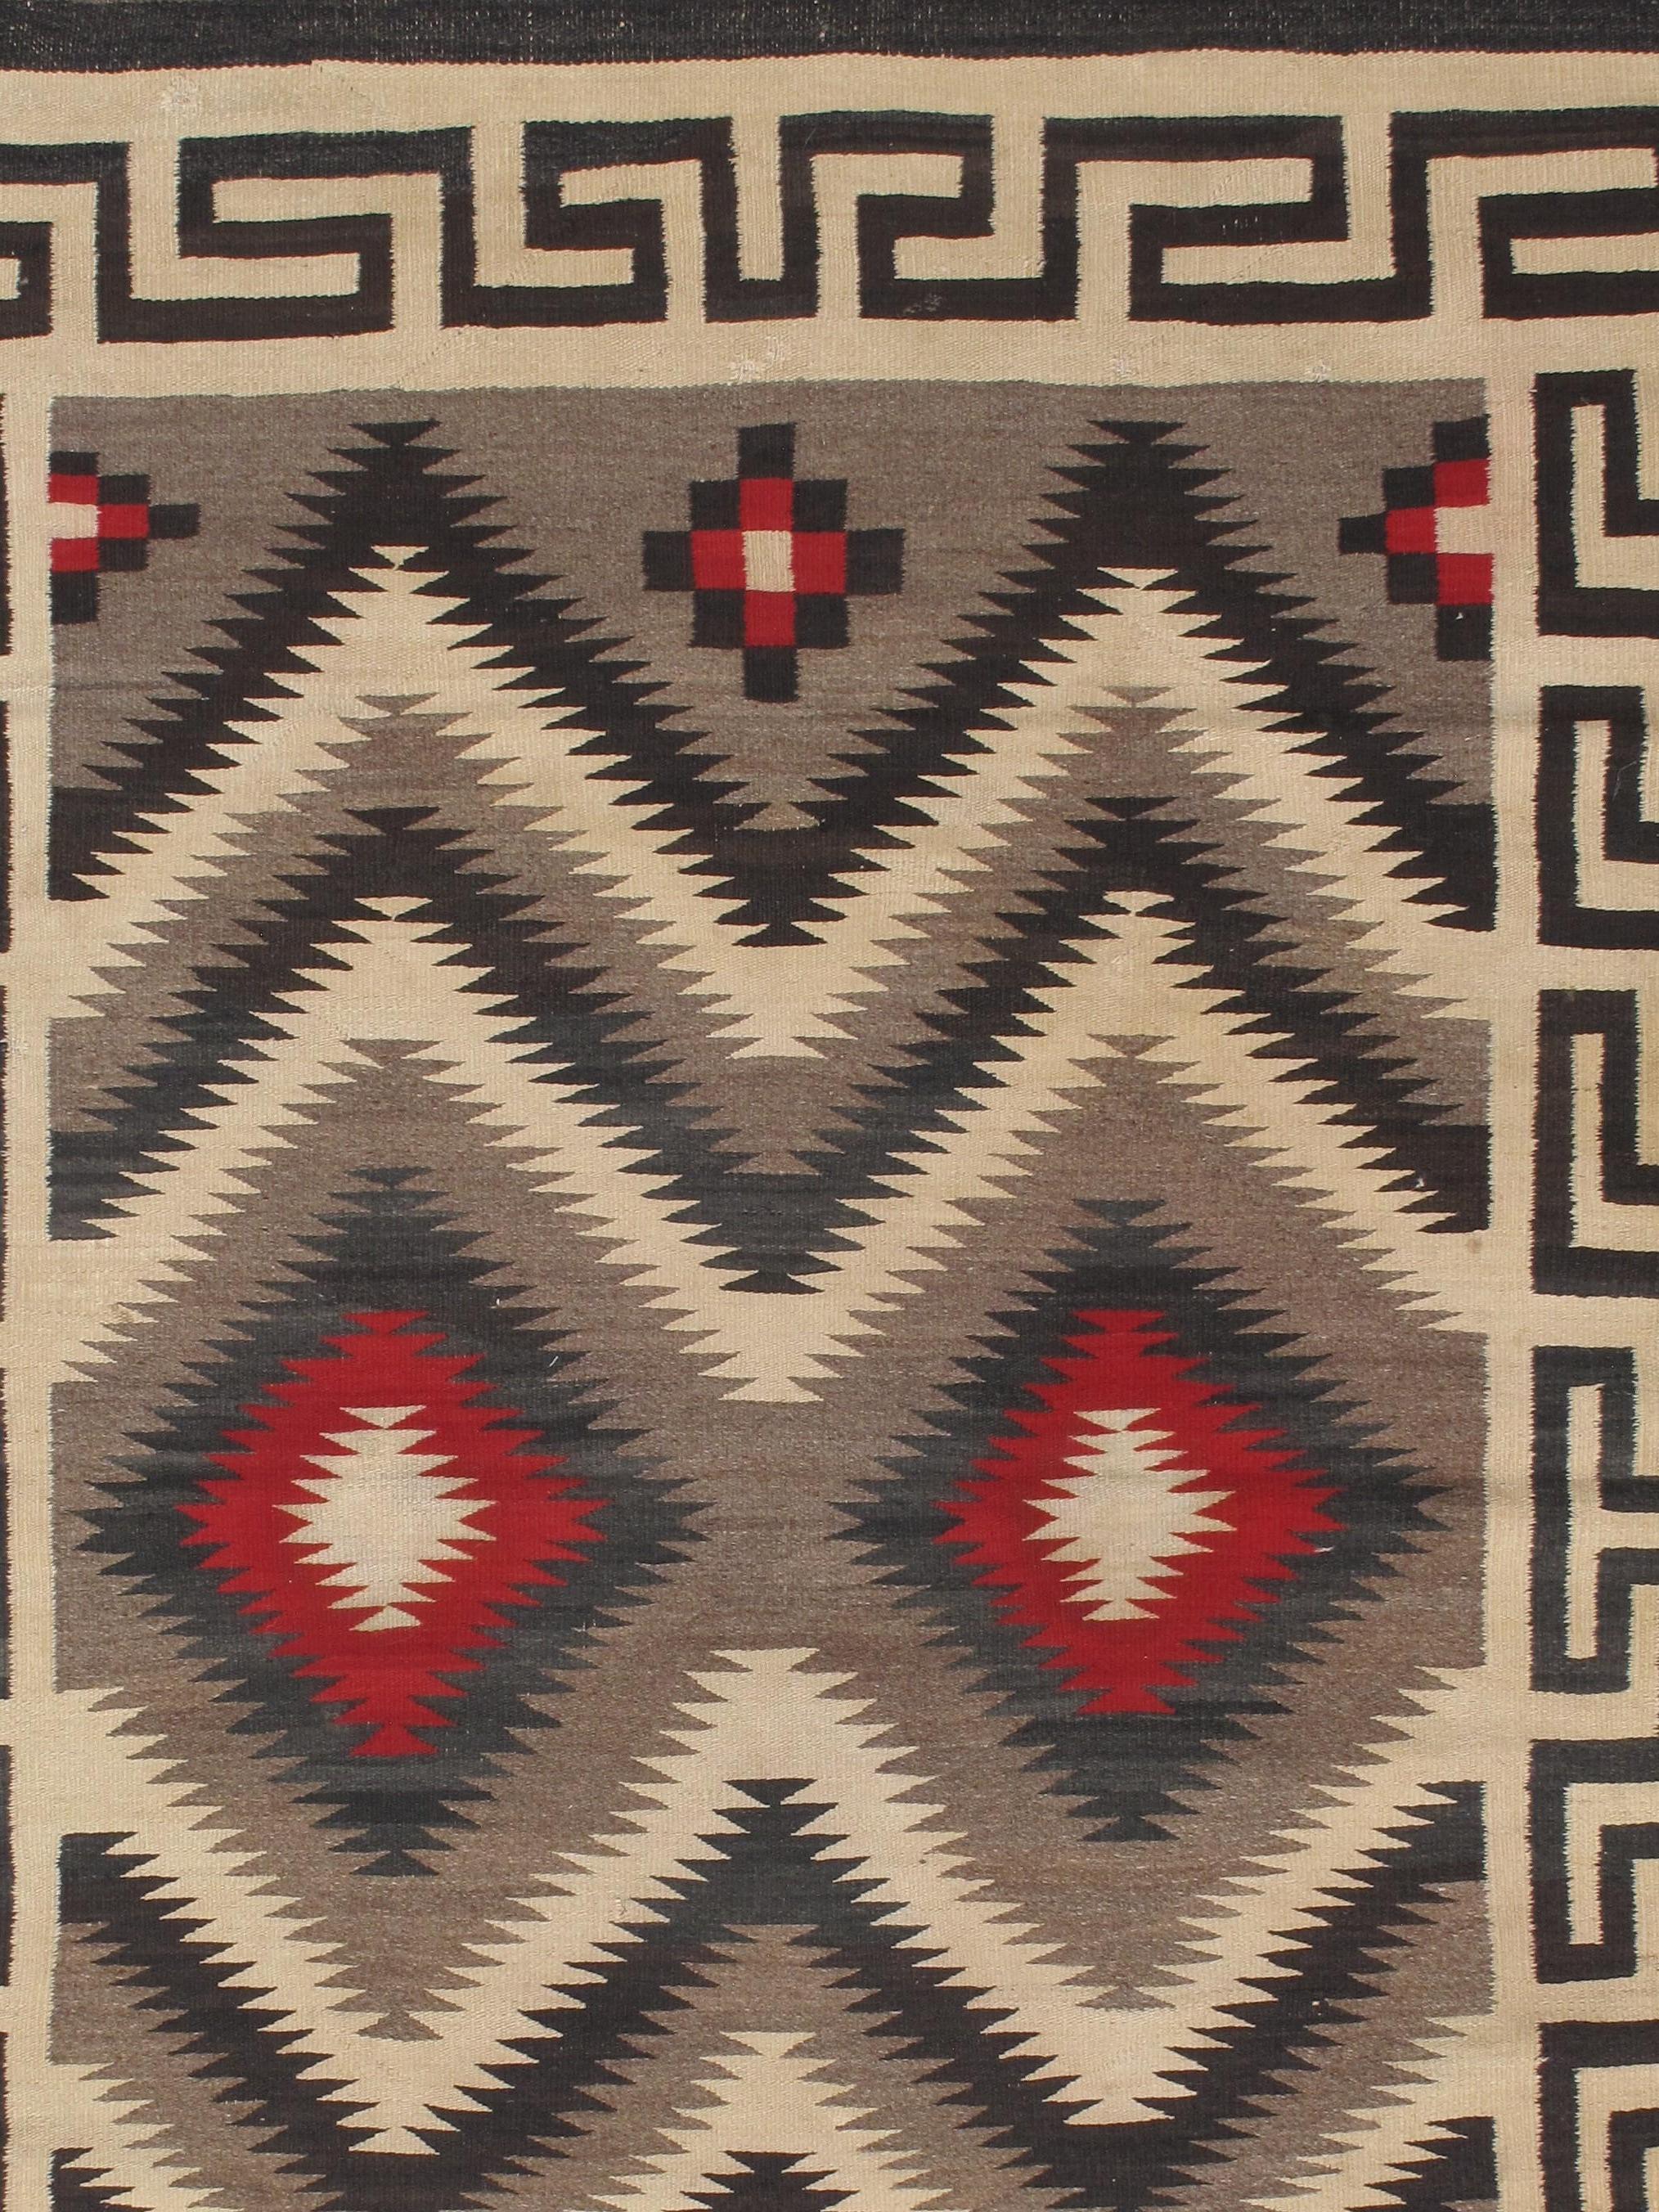 Navajo-Teppiche und -Decken sind Textilien, die vom Navajo-Volk im Gebiet der Four Corners in den Vereinigten Staaten hergestellt werden. Navajo-Textilien genießen ein hohes Ansehen und sind seit über 150 Jahren als Handelsware begehrt. Die